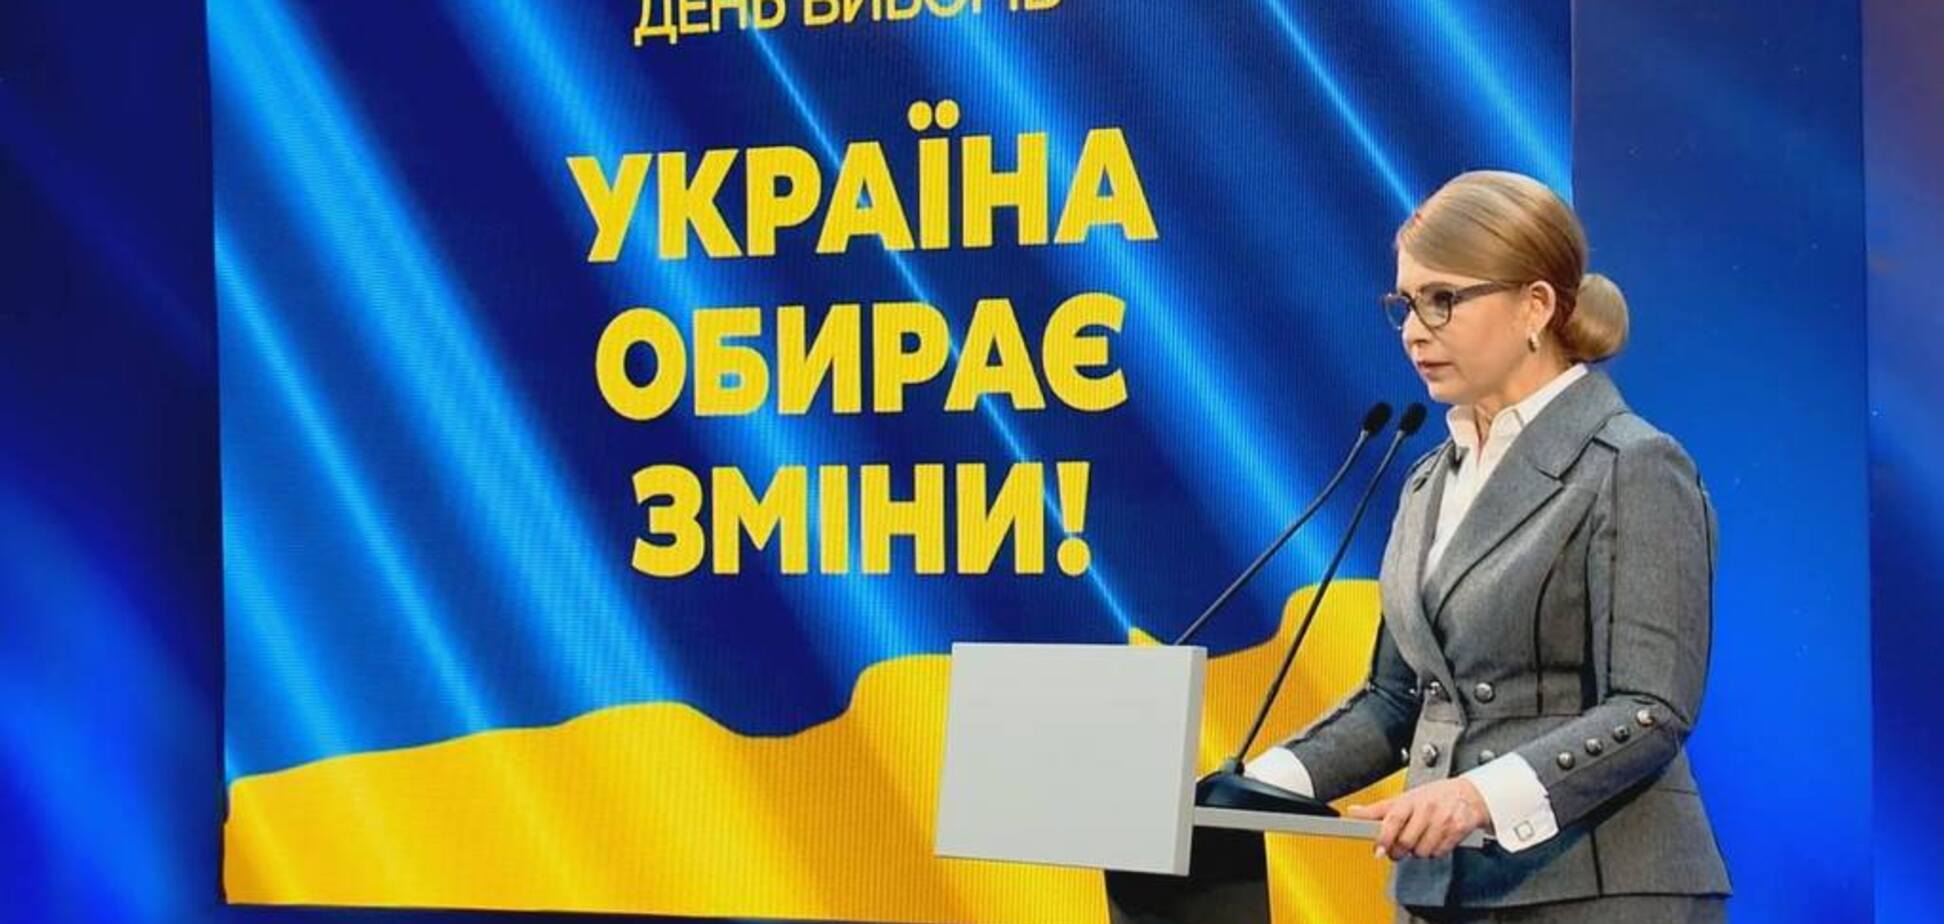 Тимошенко: результат виборів – це протоколи з мокрими печатками